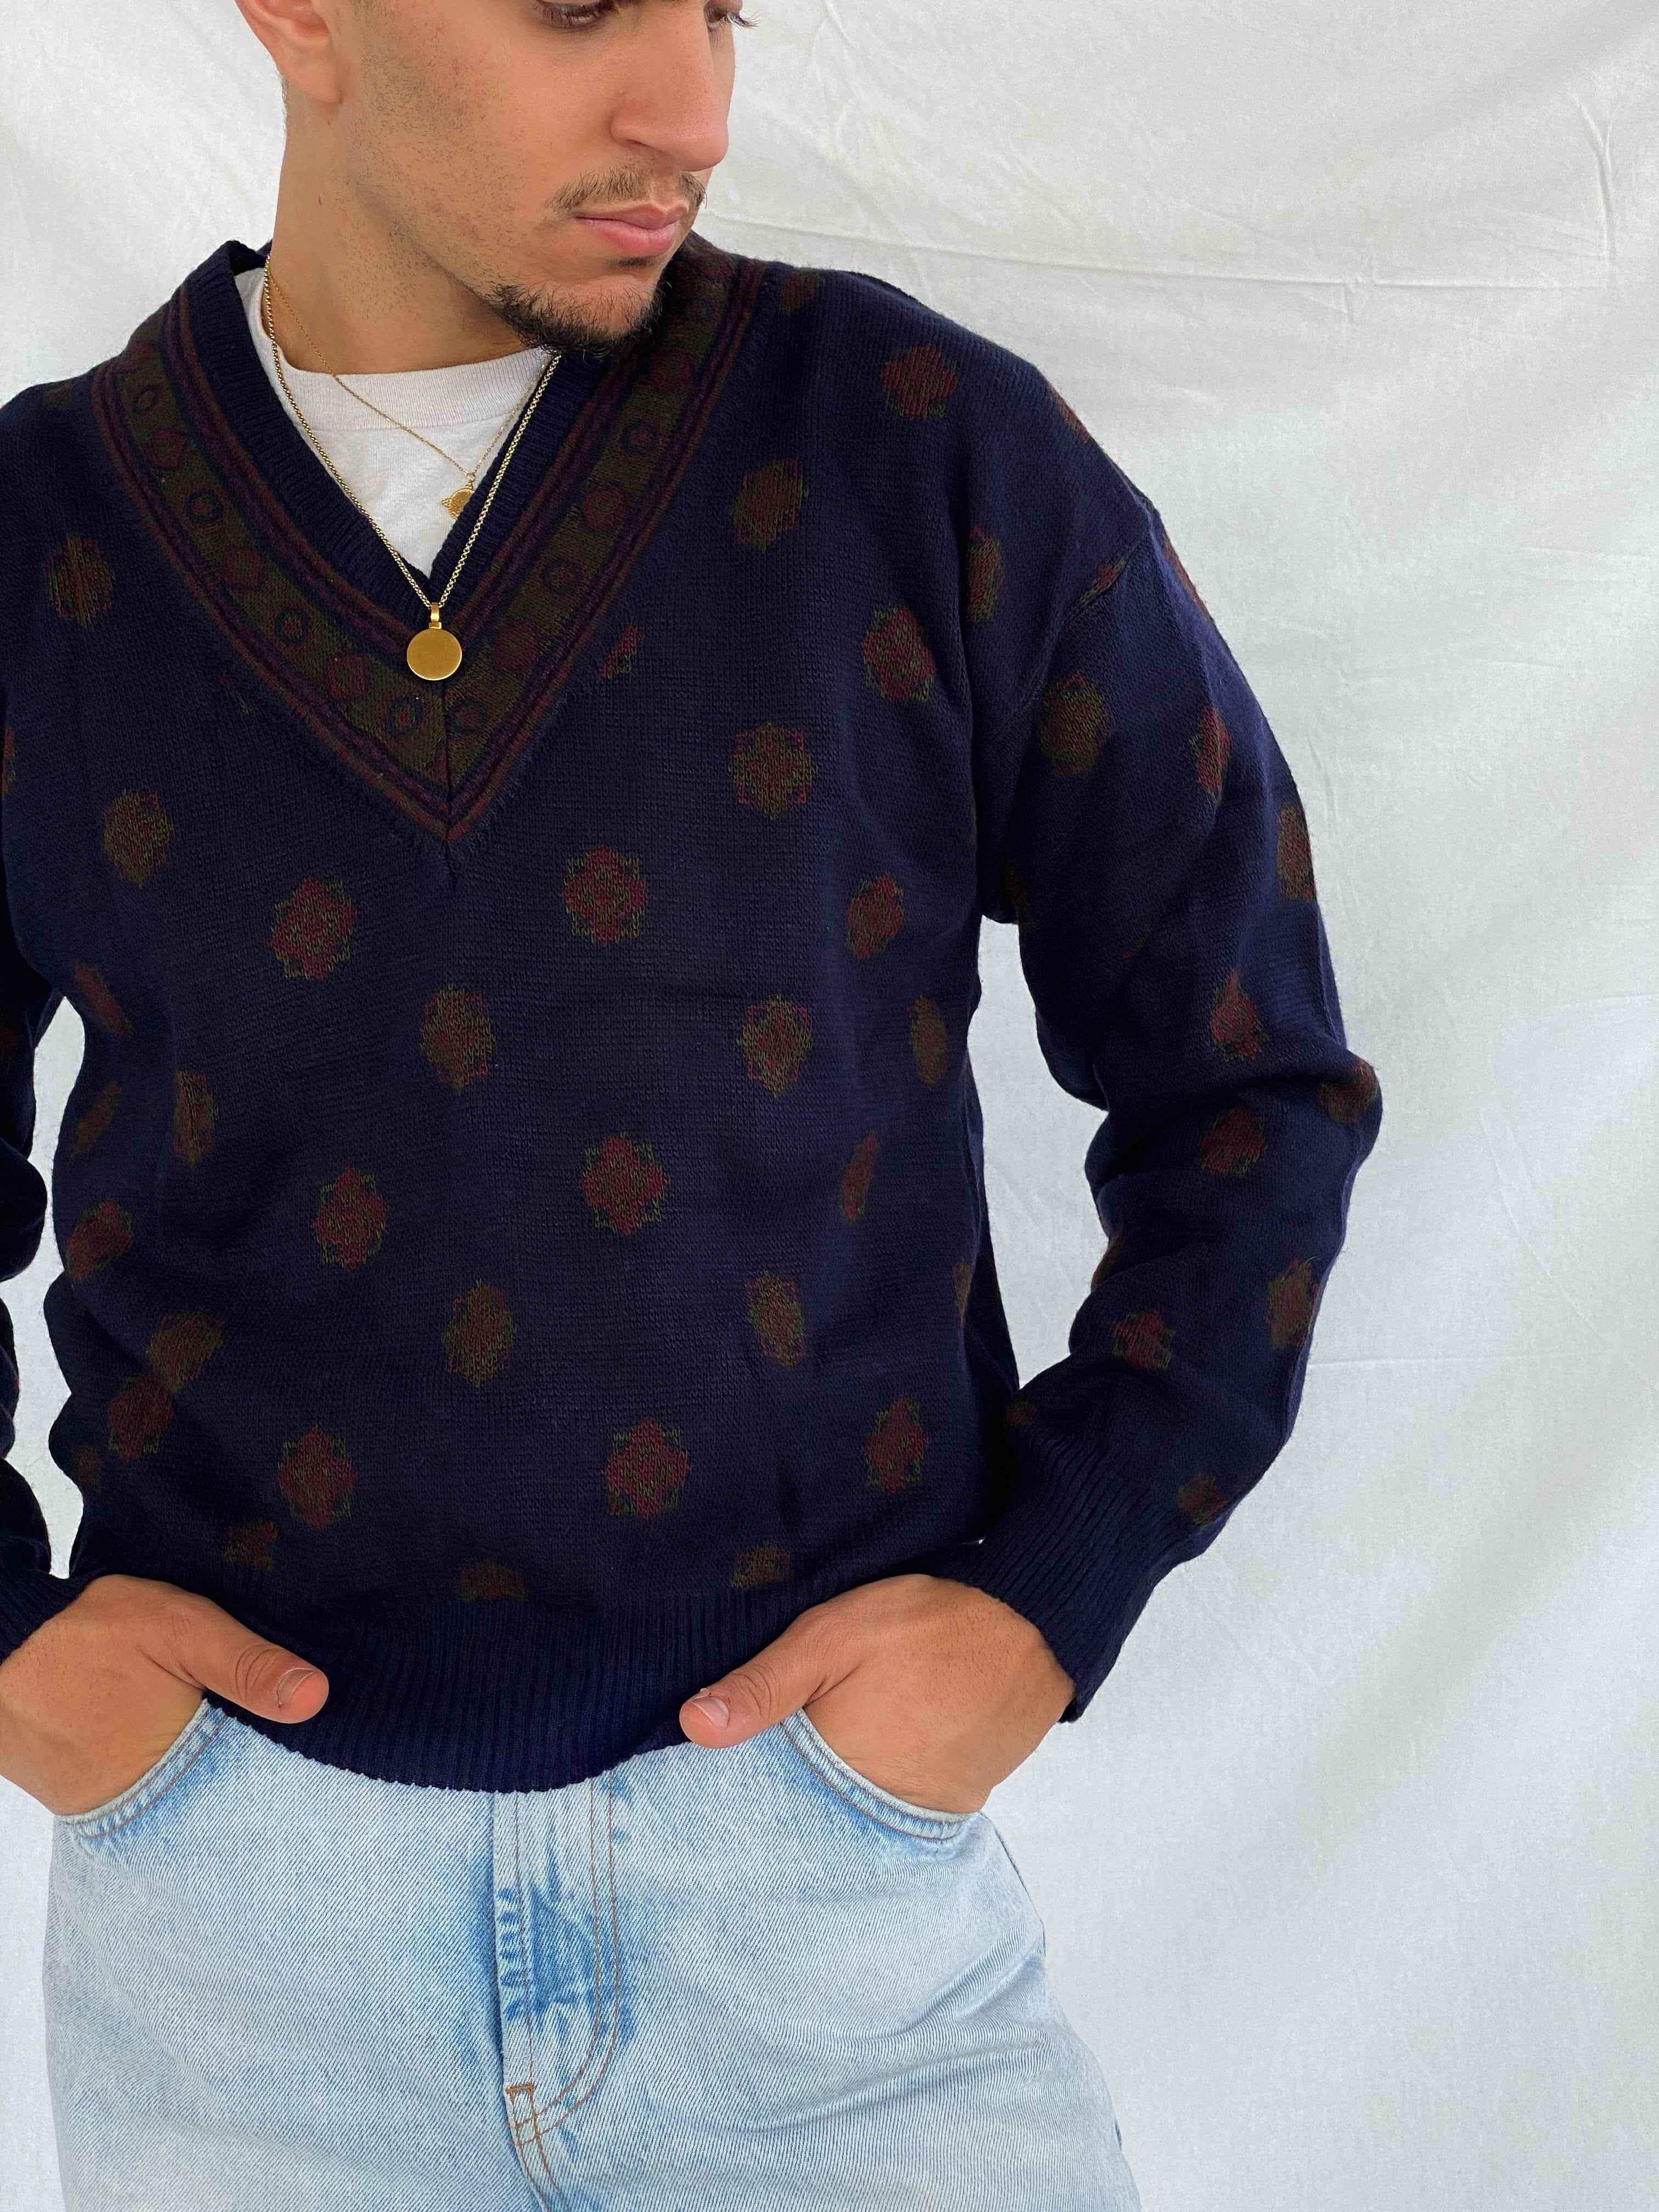 John Ashford Knitted Sweater - Balagan Vintage Sweater 00s, 90s, knit, knitted, knitted sweater, men, printed sweater, vintage, vintage sweater, winter